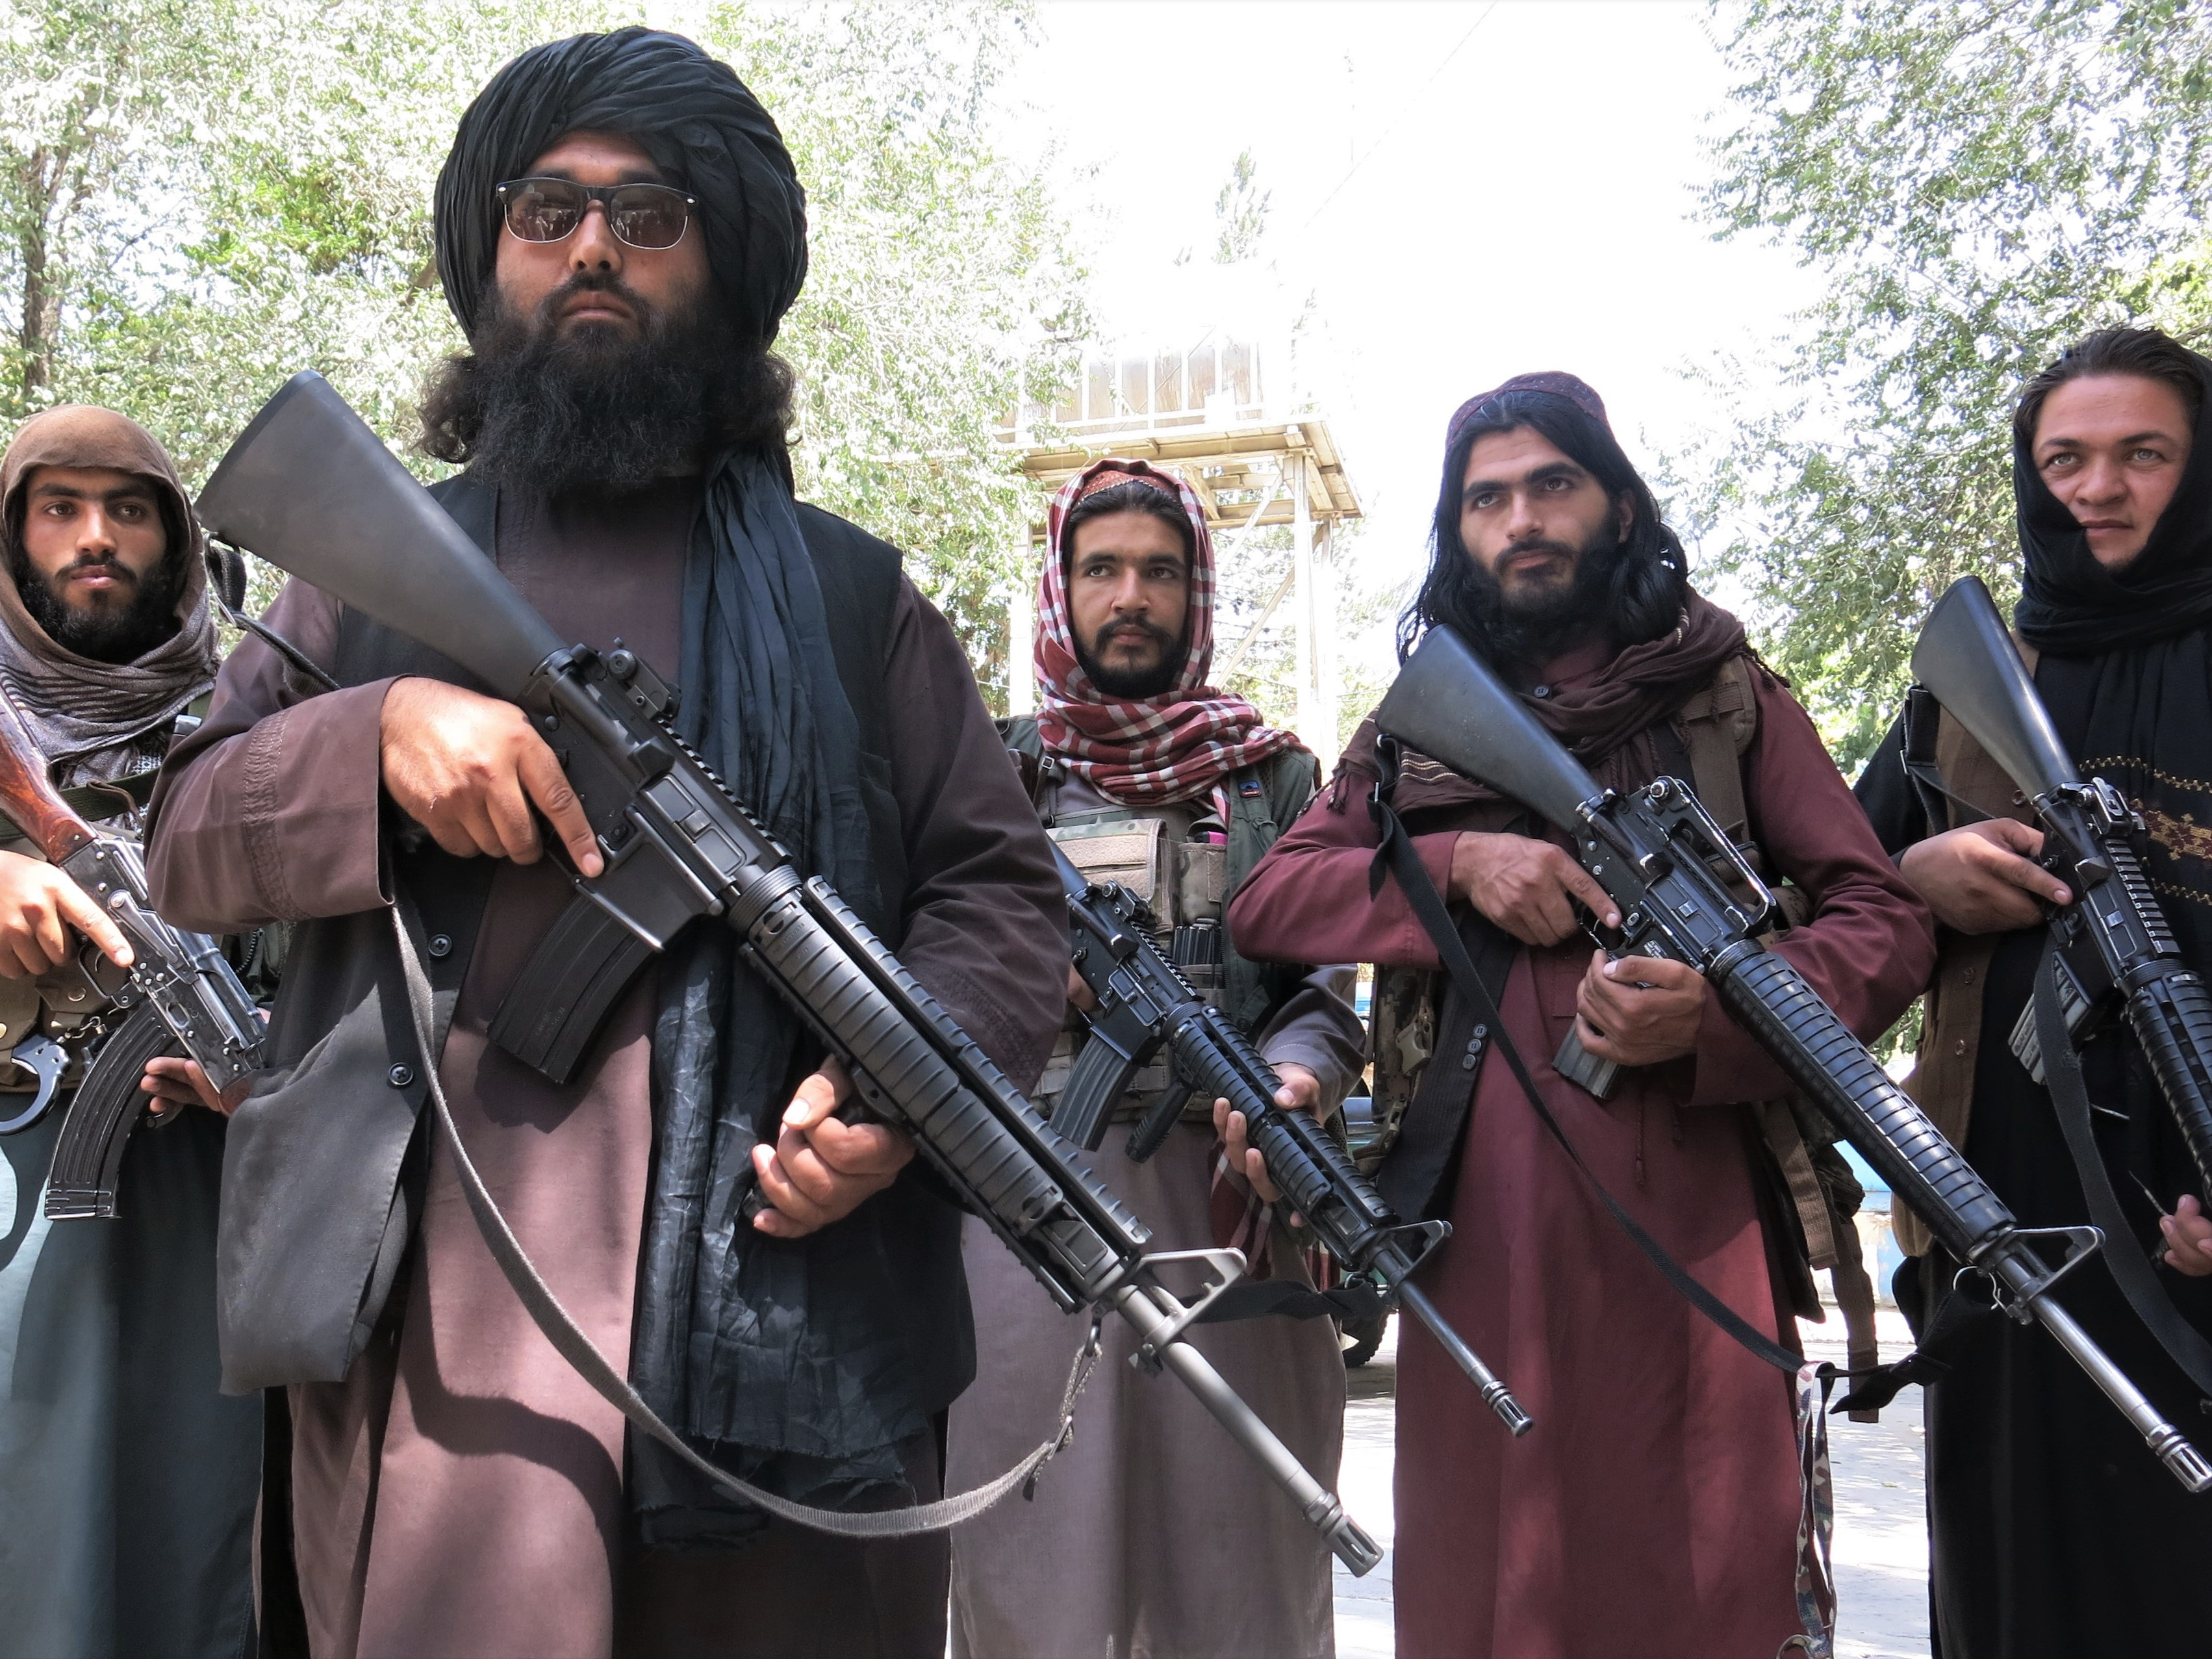 Viele Familien, darunter auch die von Burhan, fürchteten um ihr Leben, als die Taliban-Truppen in Afghanistan an die Macht kamen